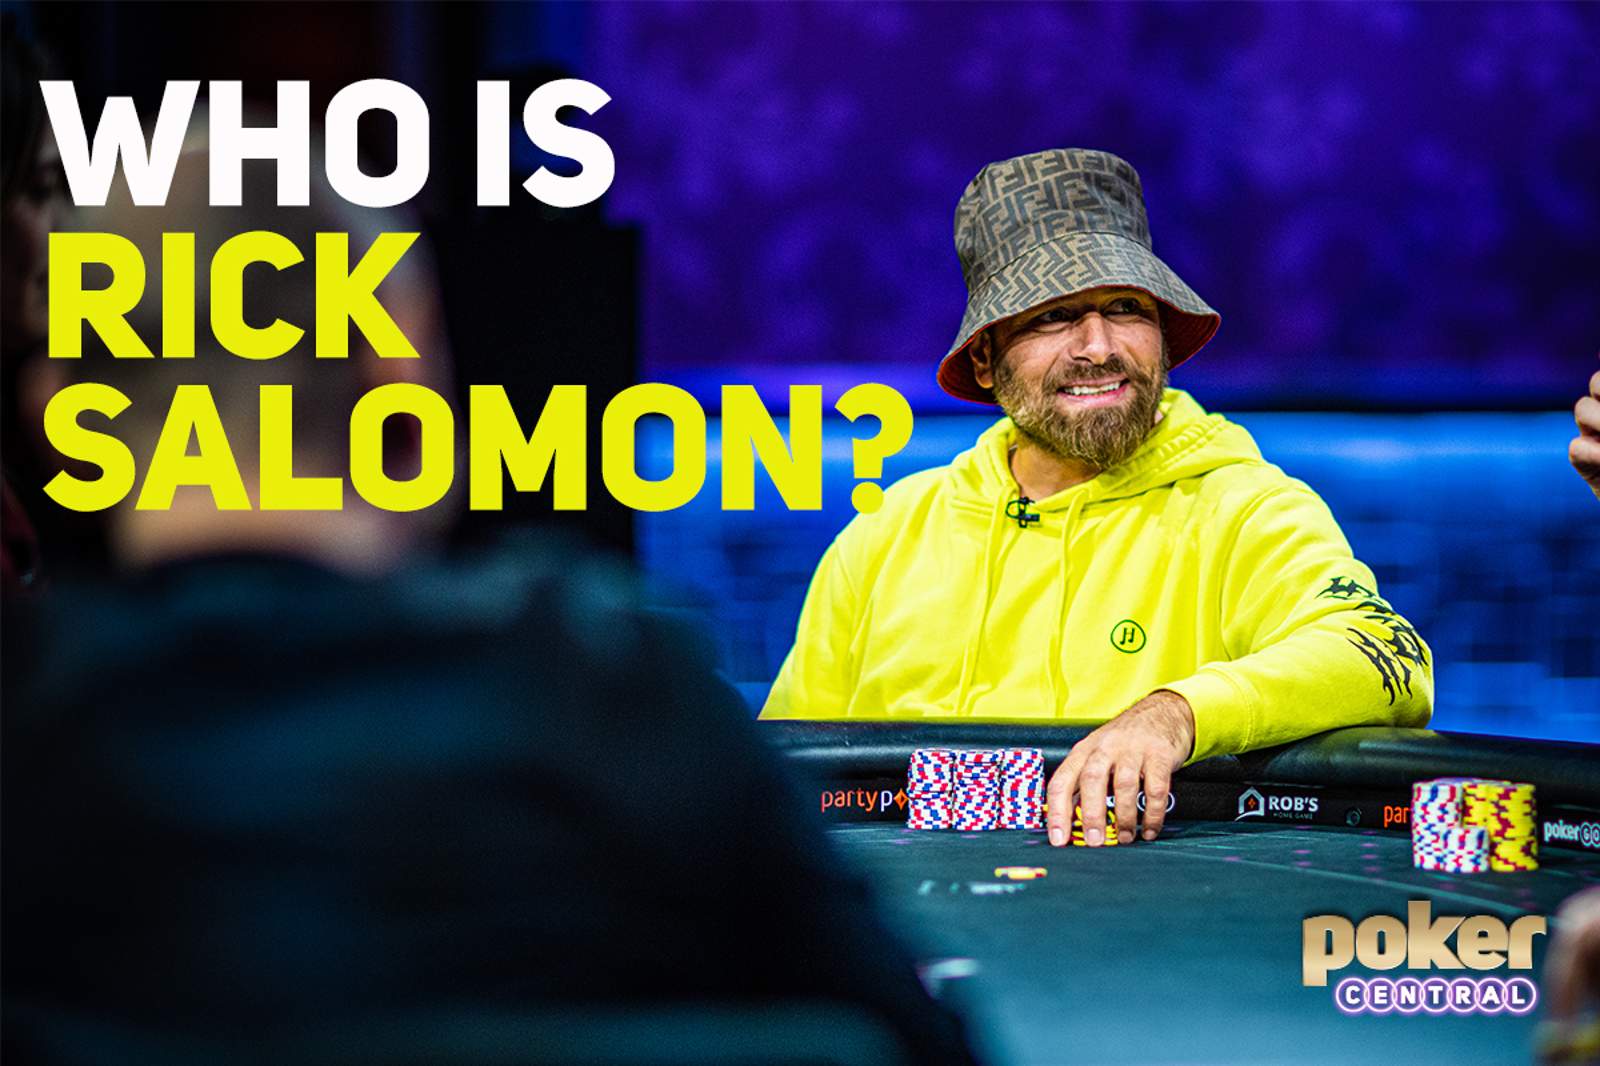 Who is Rick Salomon?